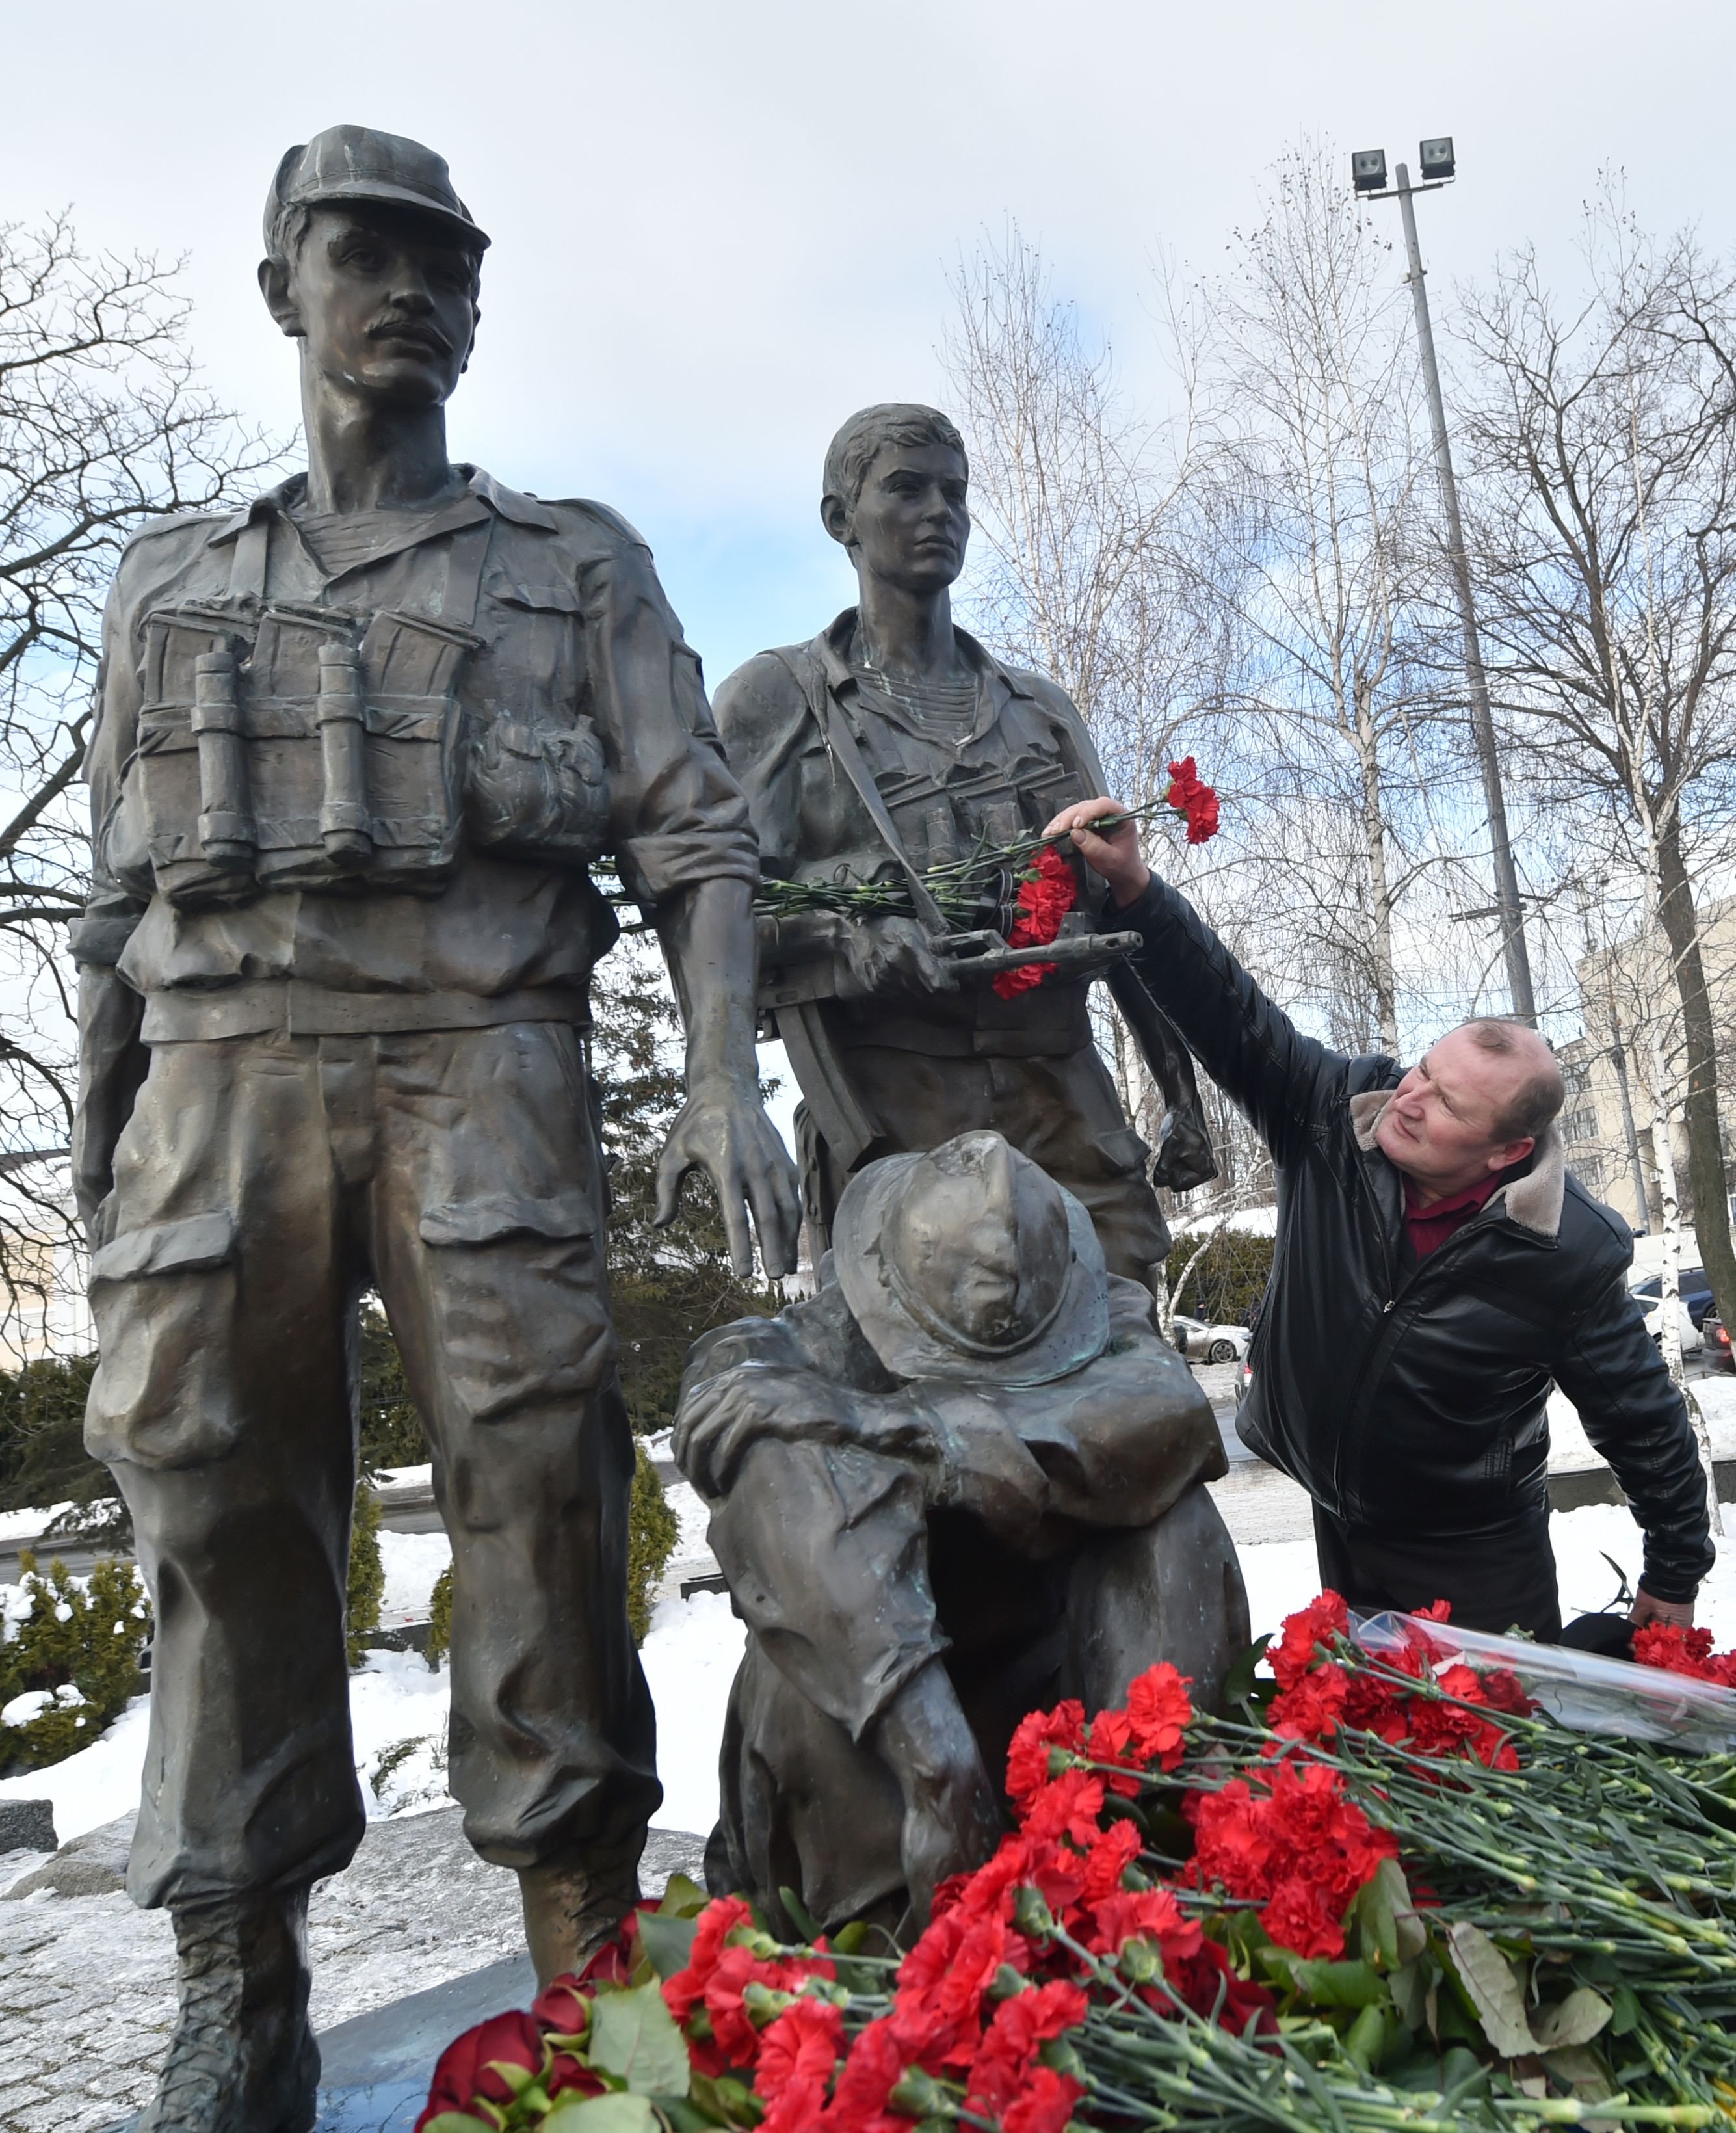 أحد المحاربين القدامى يضع ورد على تمثال بالنصب التذكارى لضحايا الحرب السوفيتية